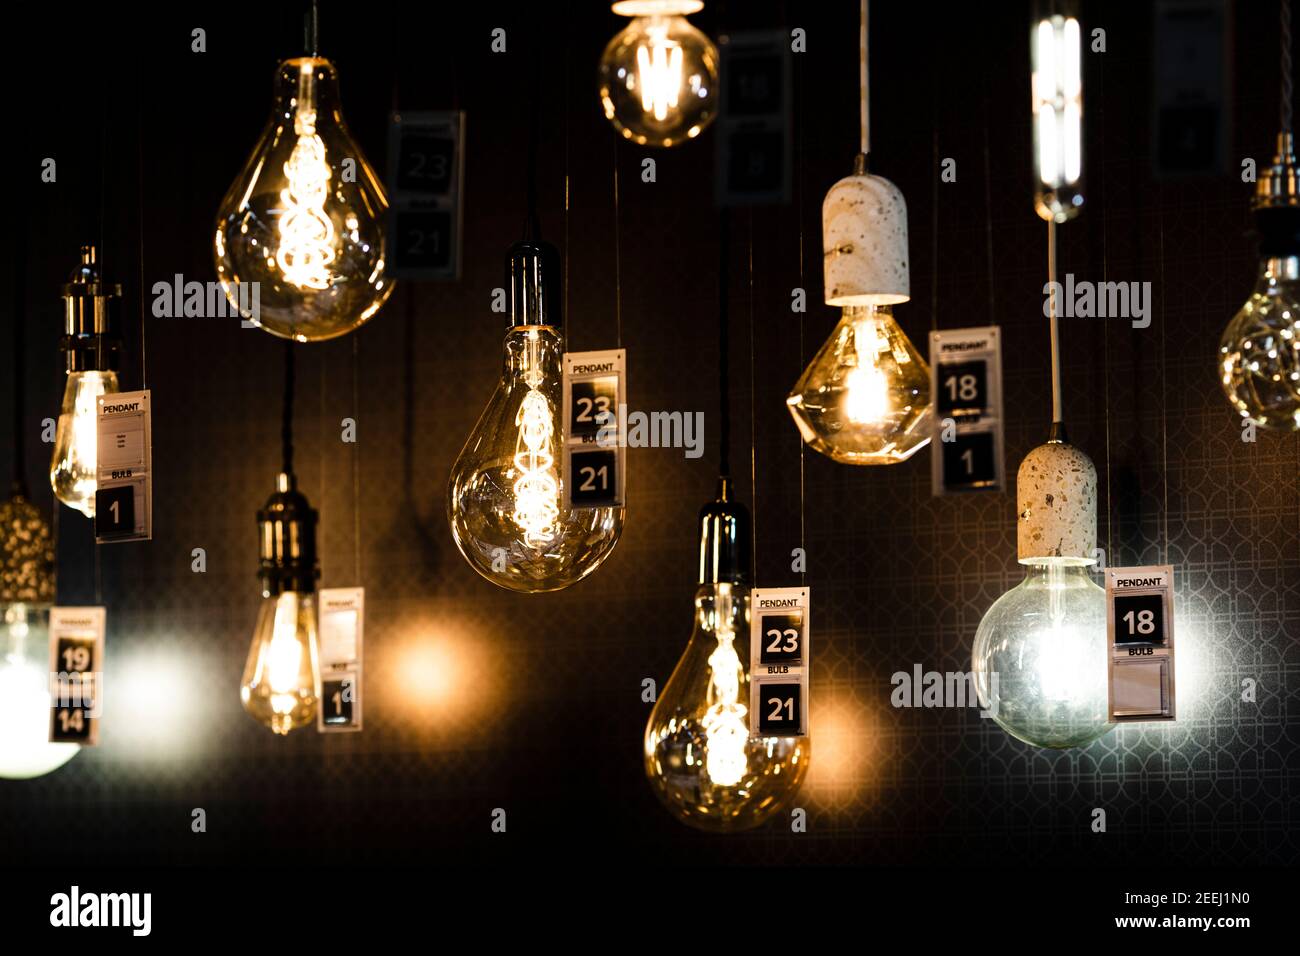 Glühbirnen, die in einem Geschäft von der Decke hängen Stockfotografie -  Alamy